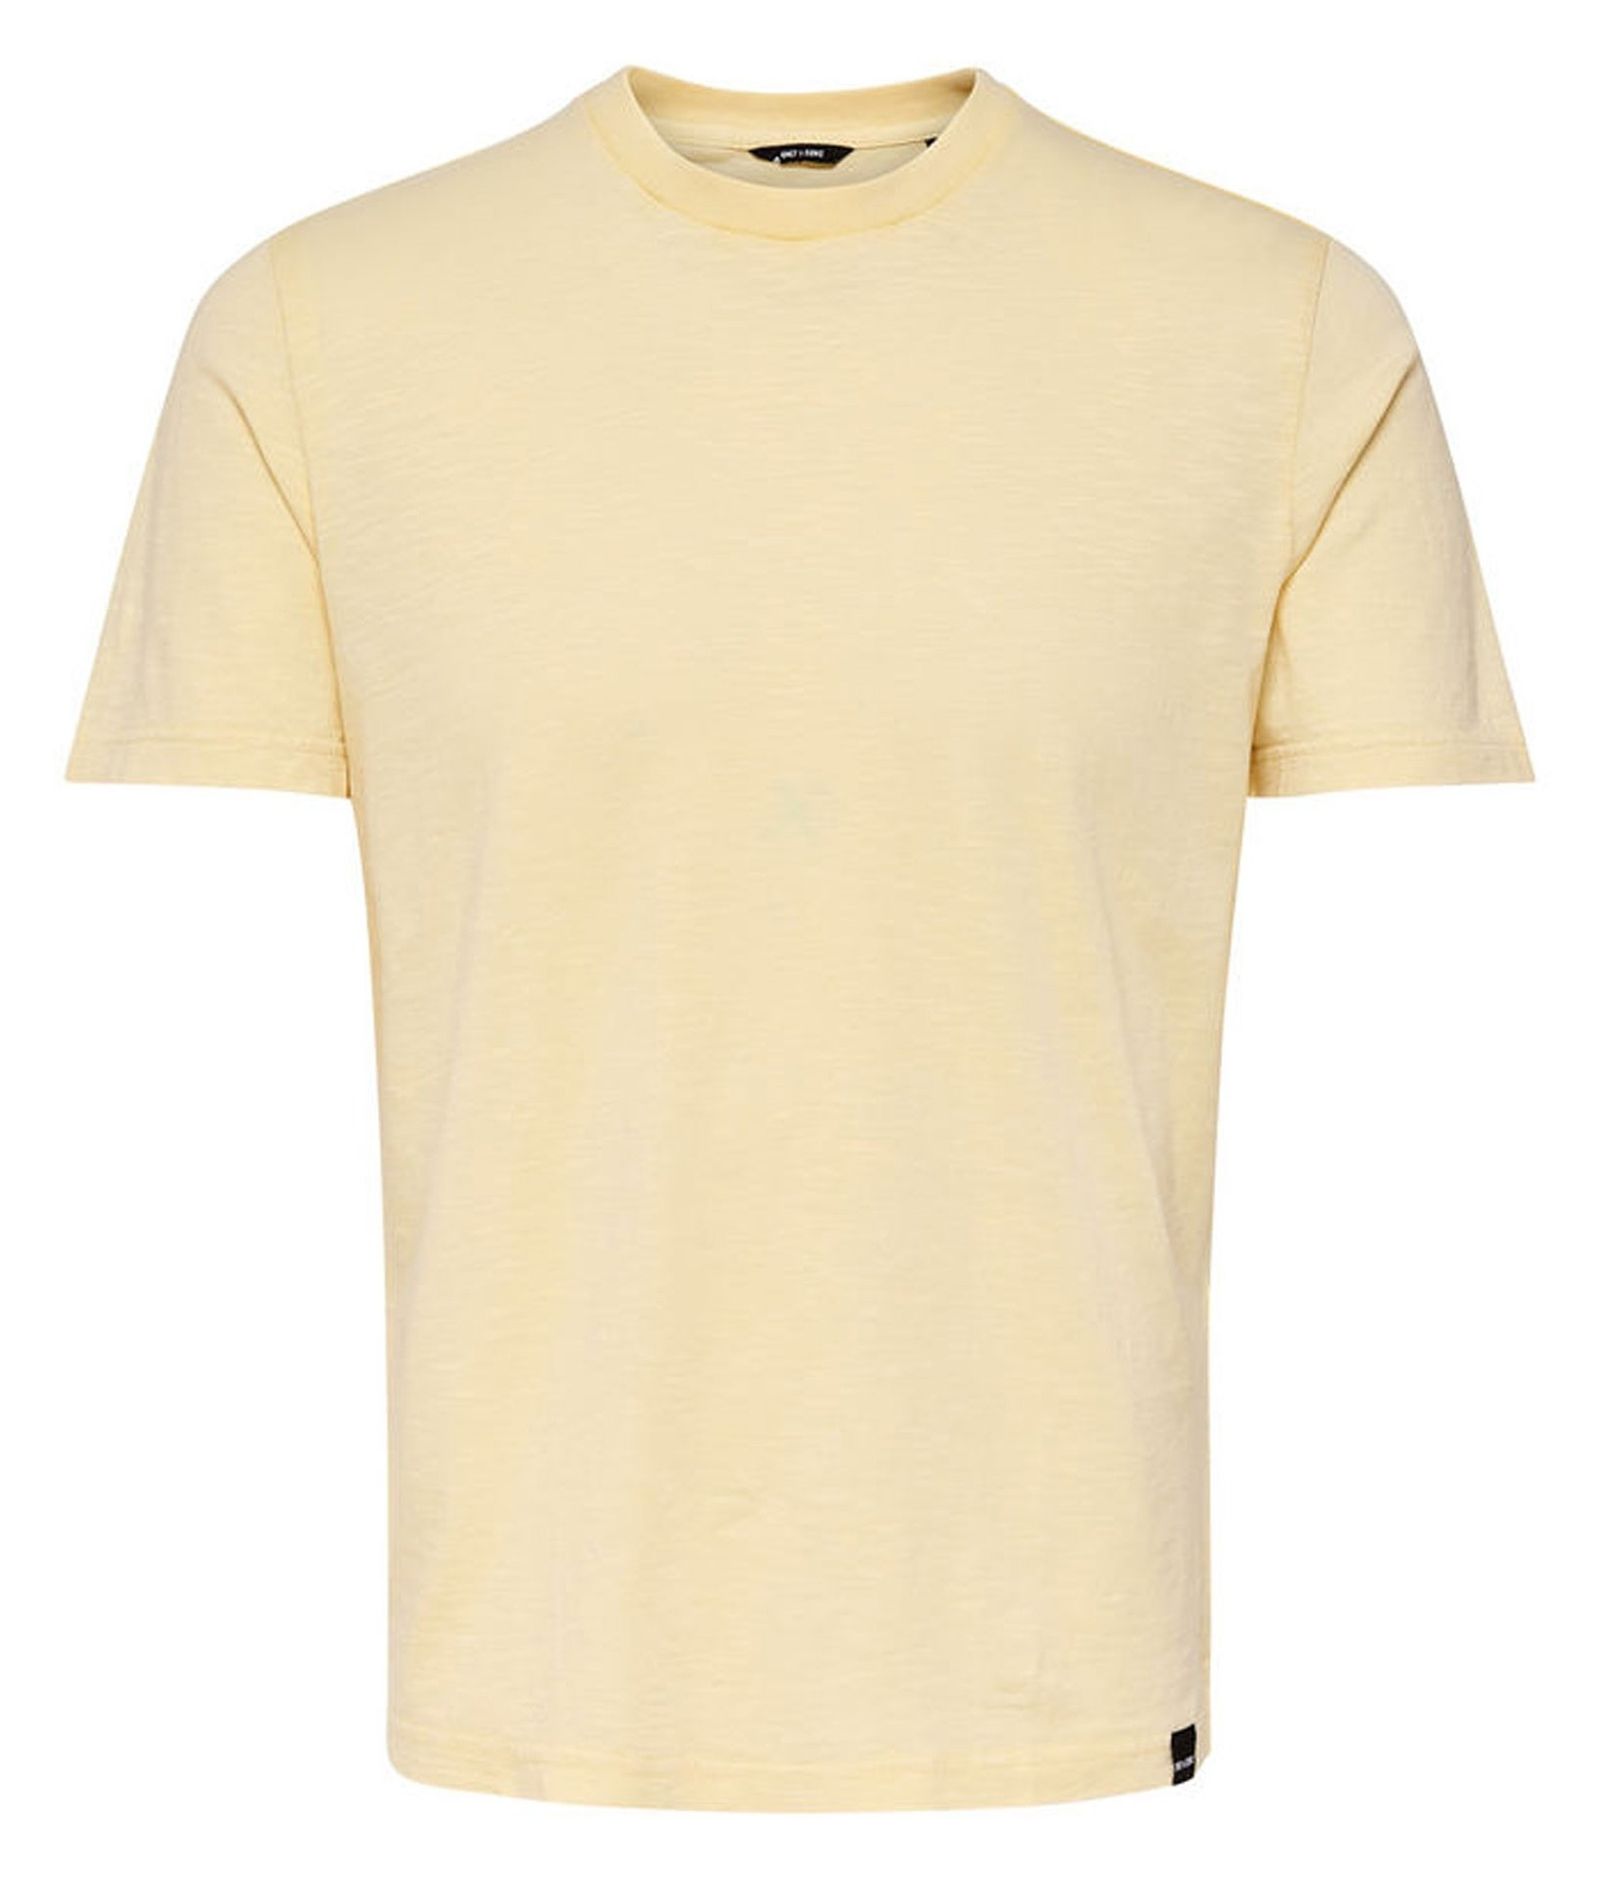 تی شرت نخی یقه گرد مردانه - اونلی اند سانز - زرد - 1